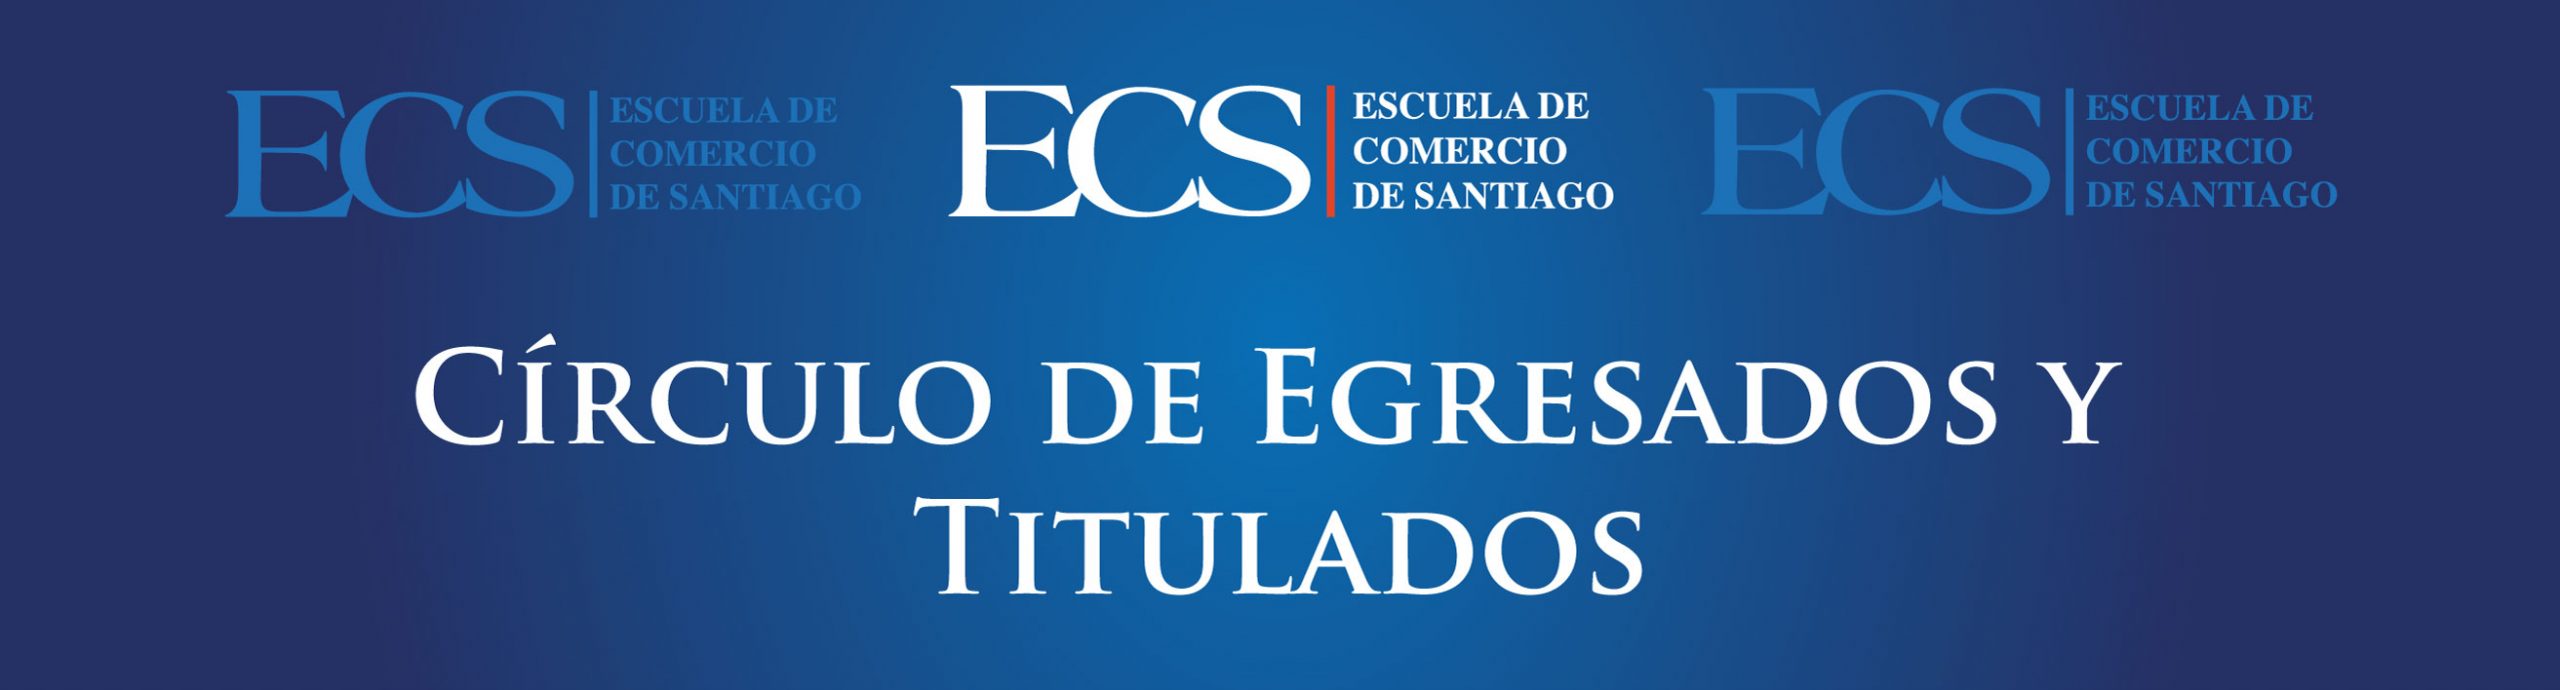 Escuela de Comercio - Círculo de Egresados y Titulados ECS